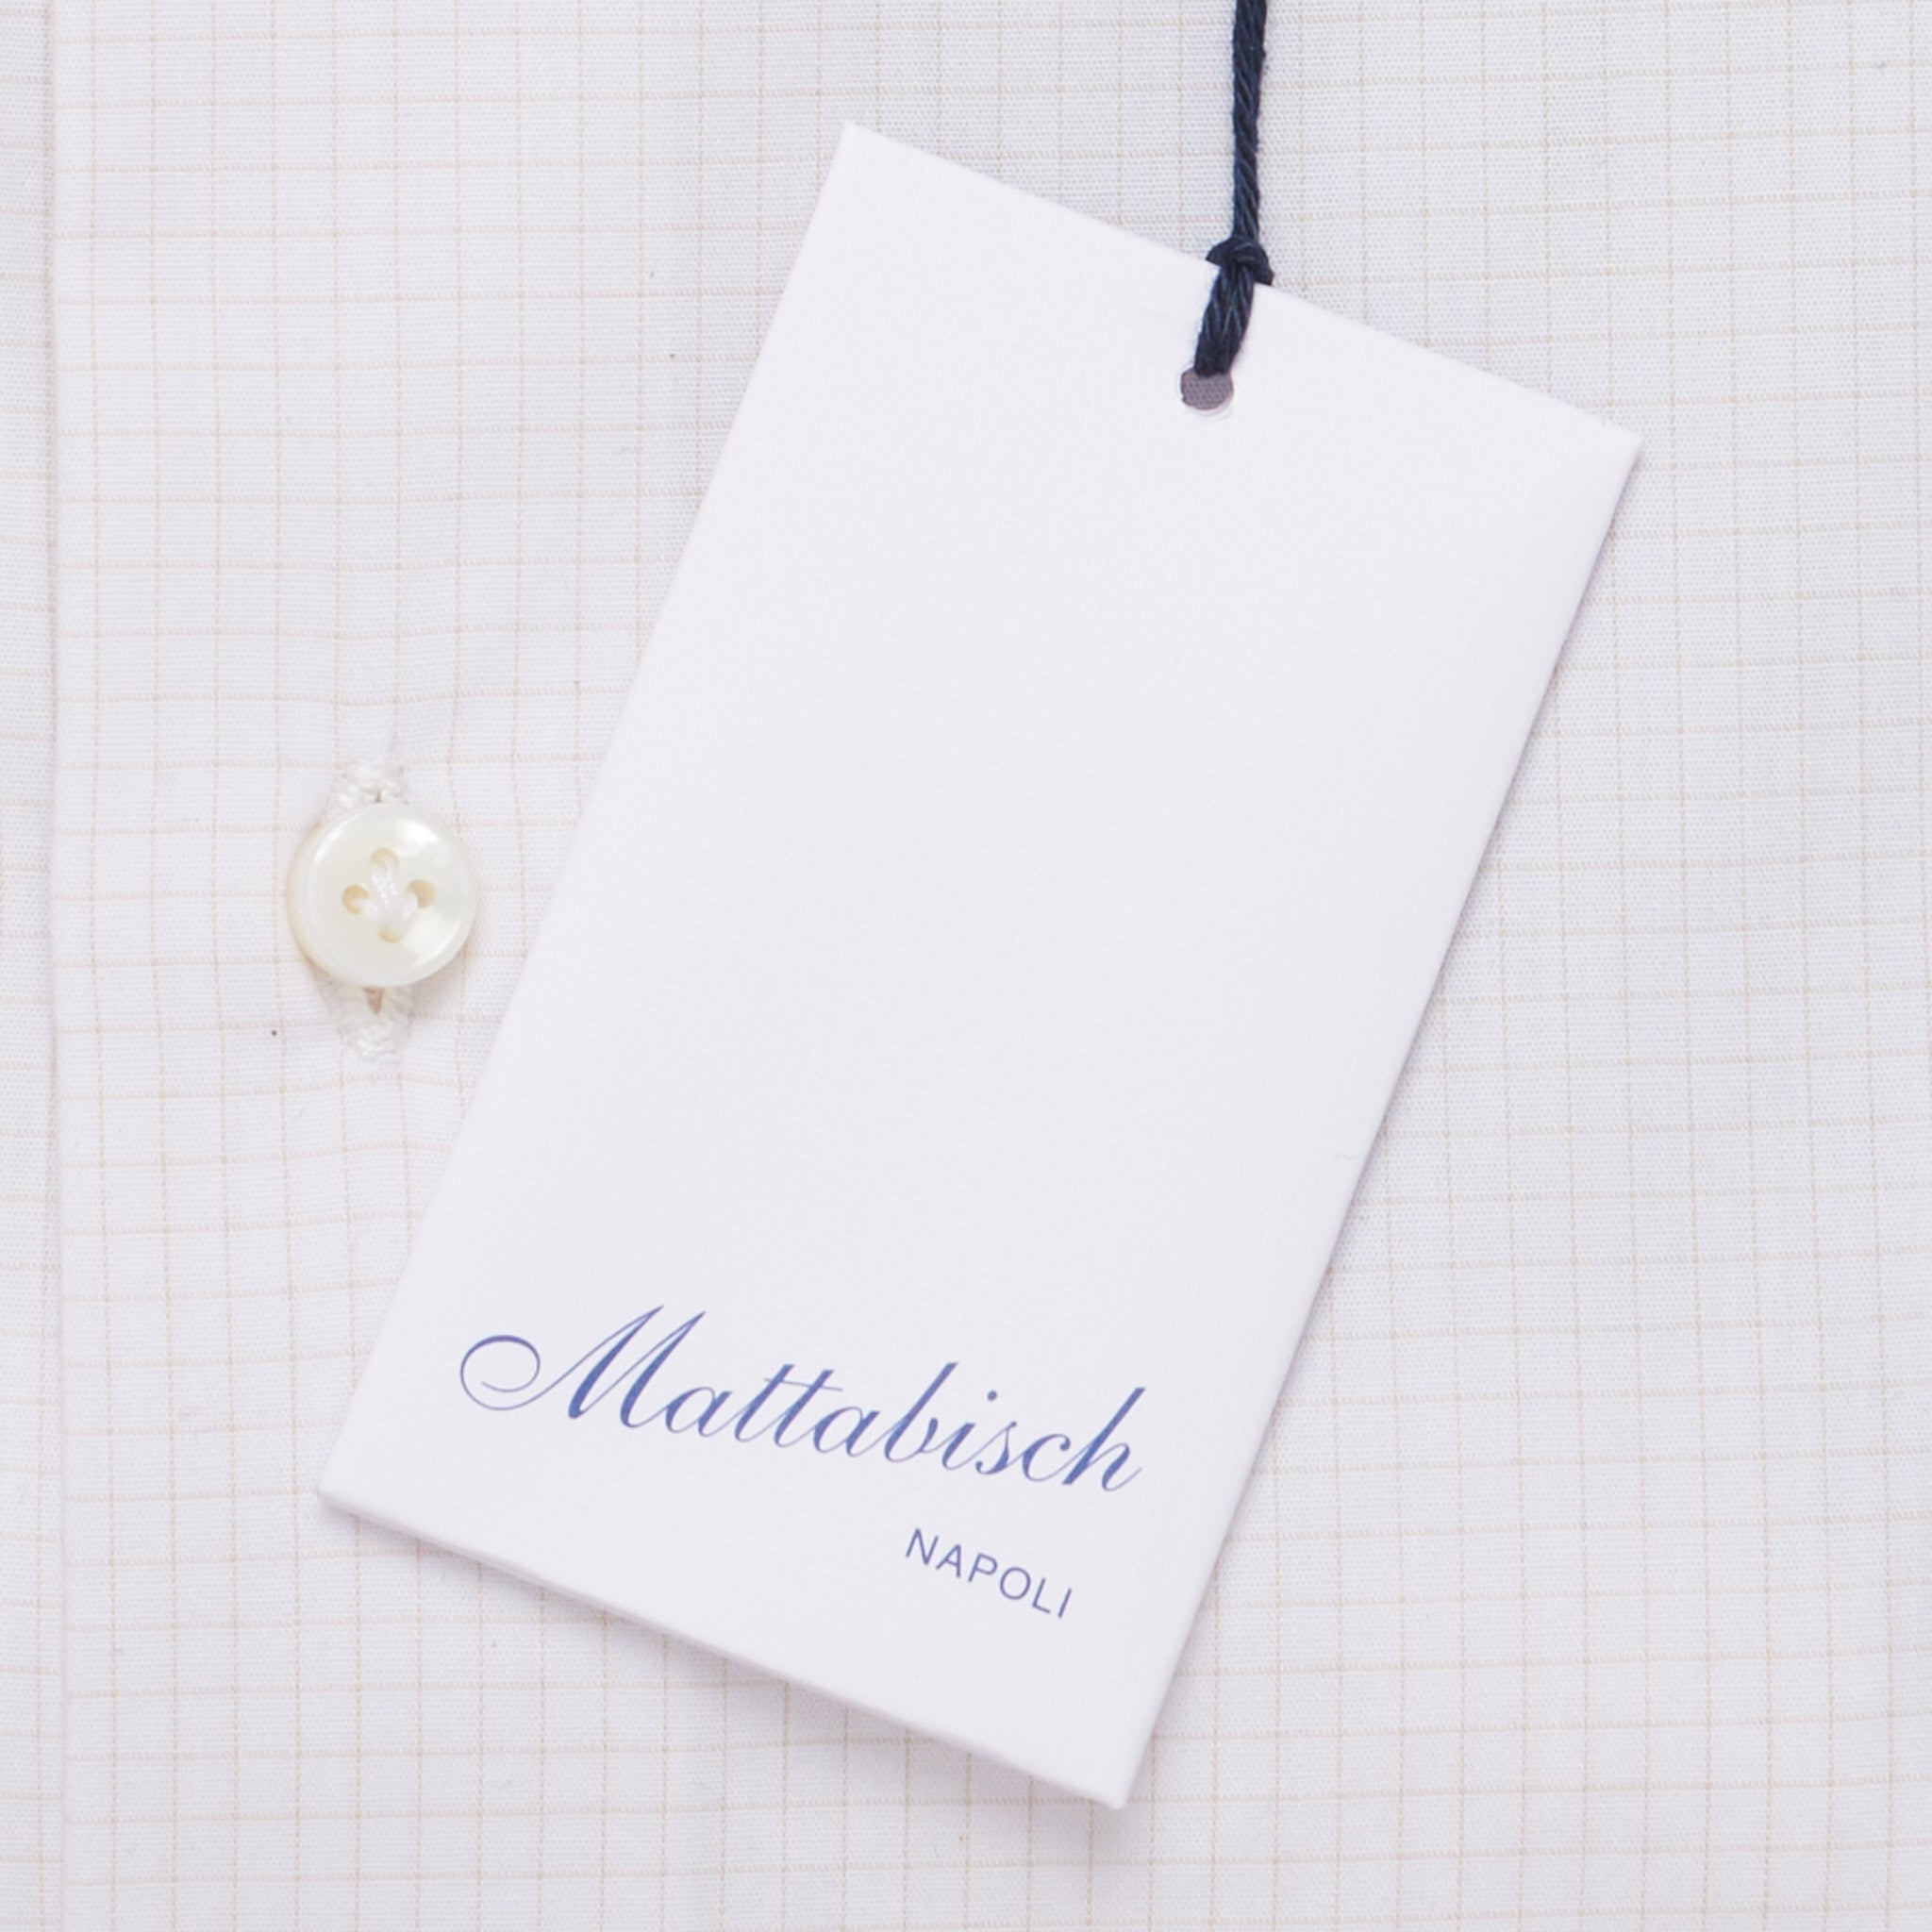 MATTABISCH by Kiton Handmade White Beige Checkered Dress Shirt NEW